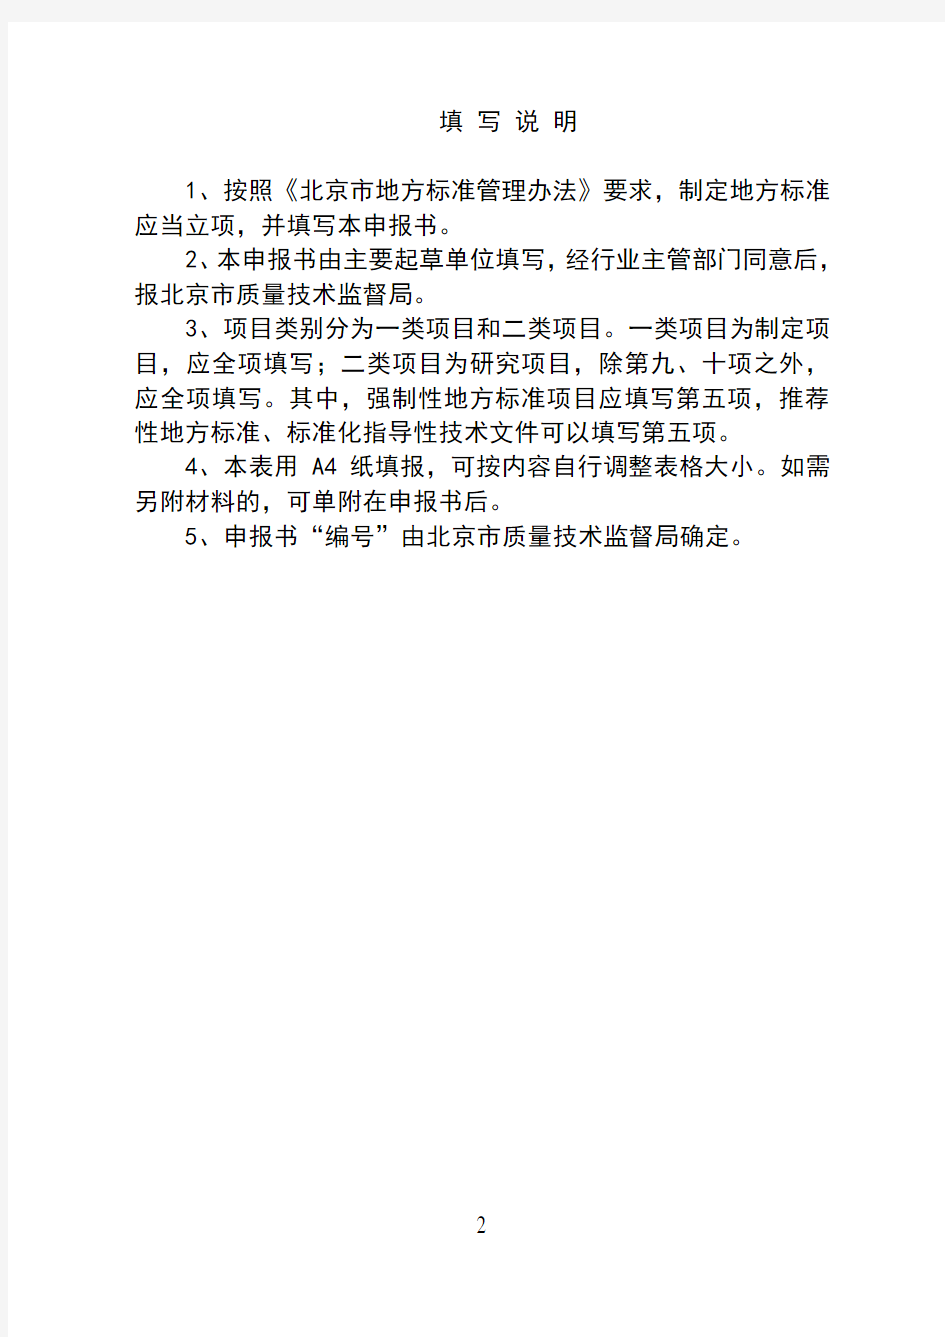 北京市地方标准制修订项目申报书-填写说明